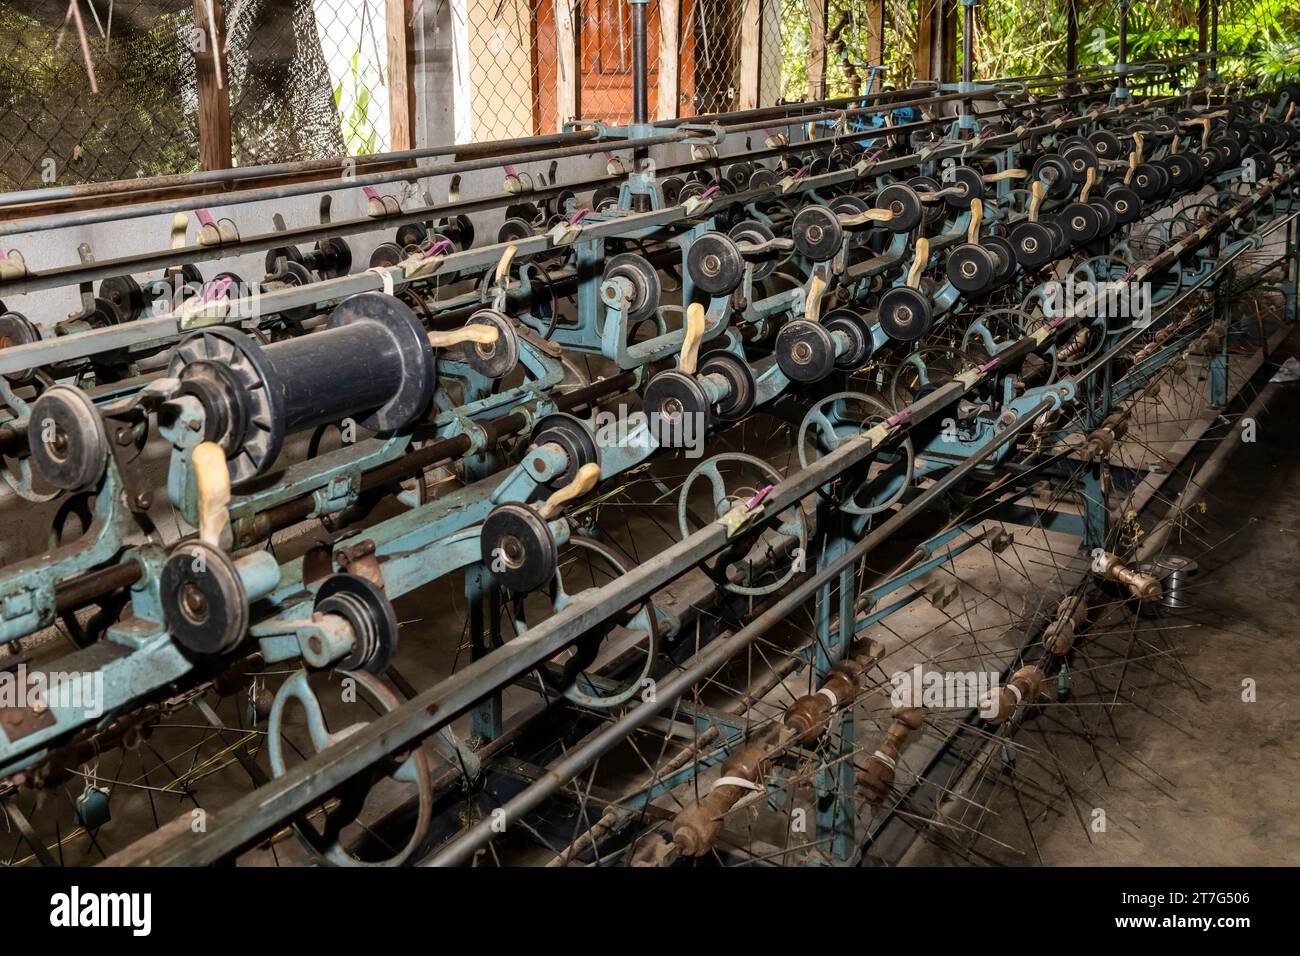 Ferme et usine de soie biologique, vieille machine à tordre, Phonsavan, province de Xiangkhouang, Laos, Asie du Sud-est, Asie Banque D'Images